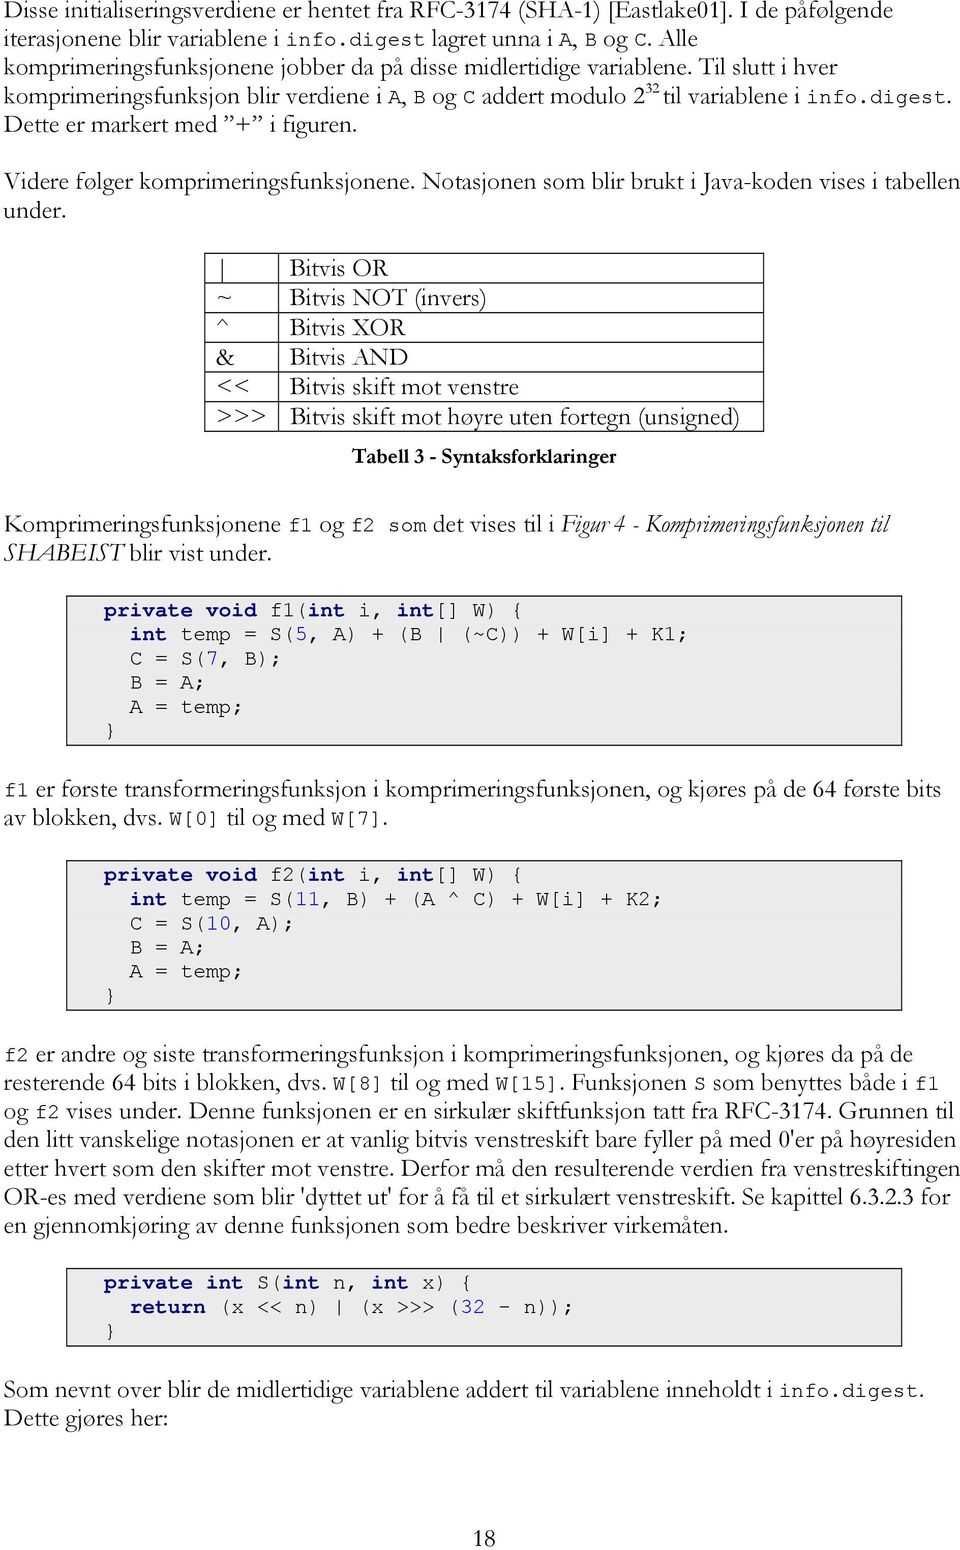 Dette er markert med + i figuren. Videre følger komprimeringsfunksjonene. Notasjonen som blir brukt i Java-koden vises i tabellen under.